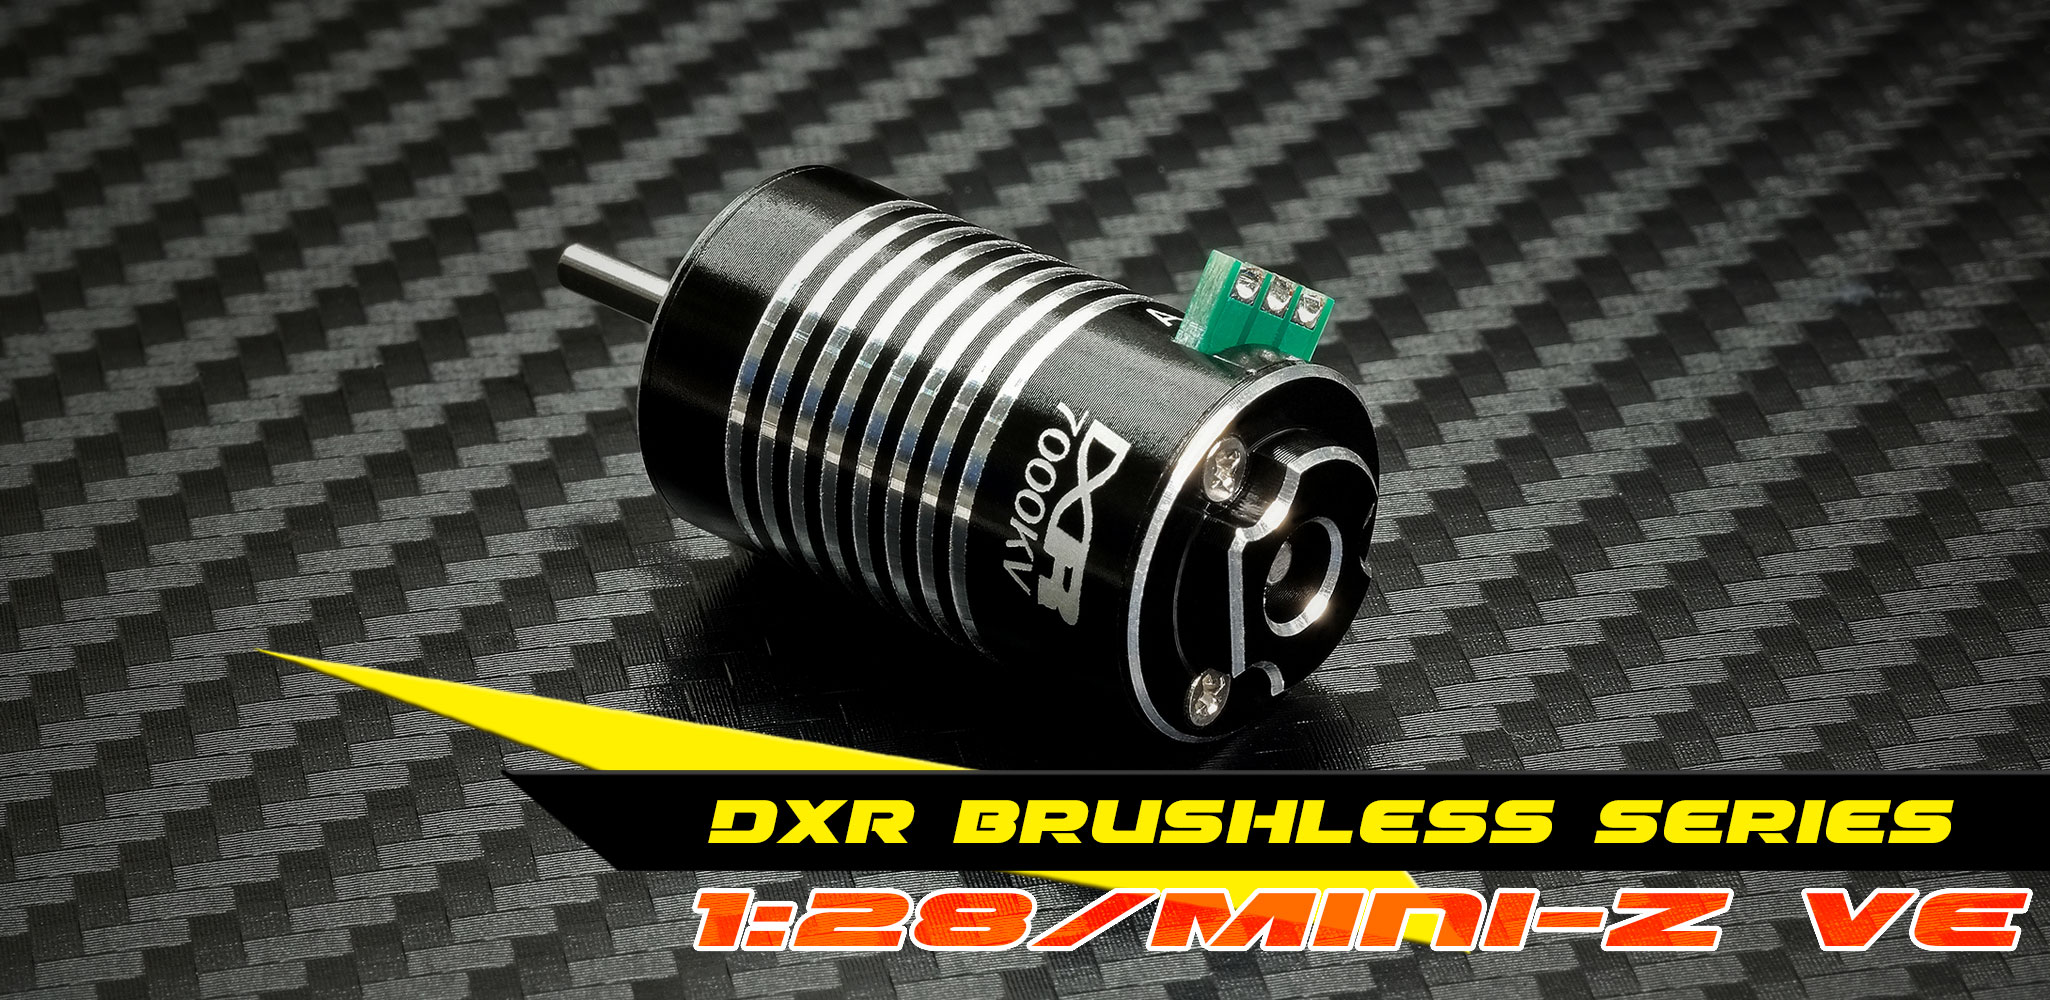 DXR Brushless Motor Series